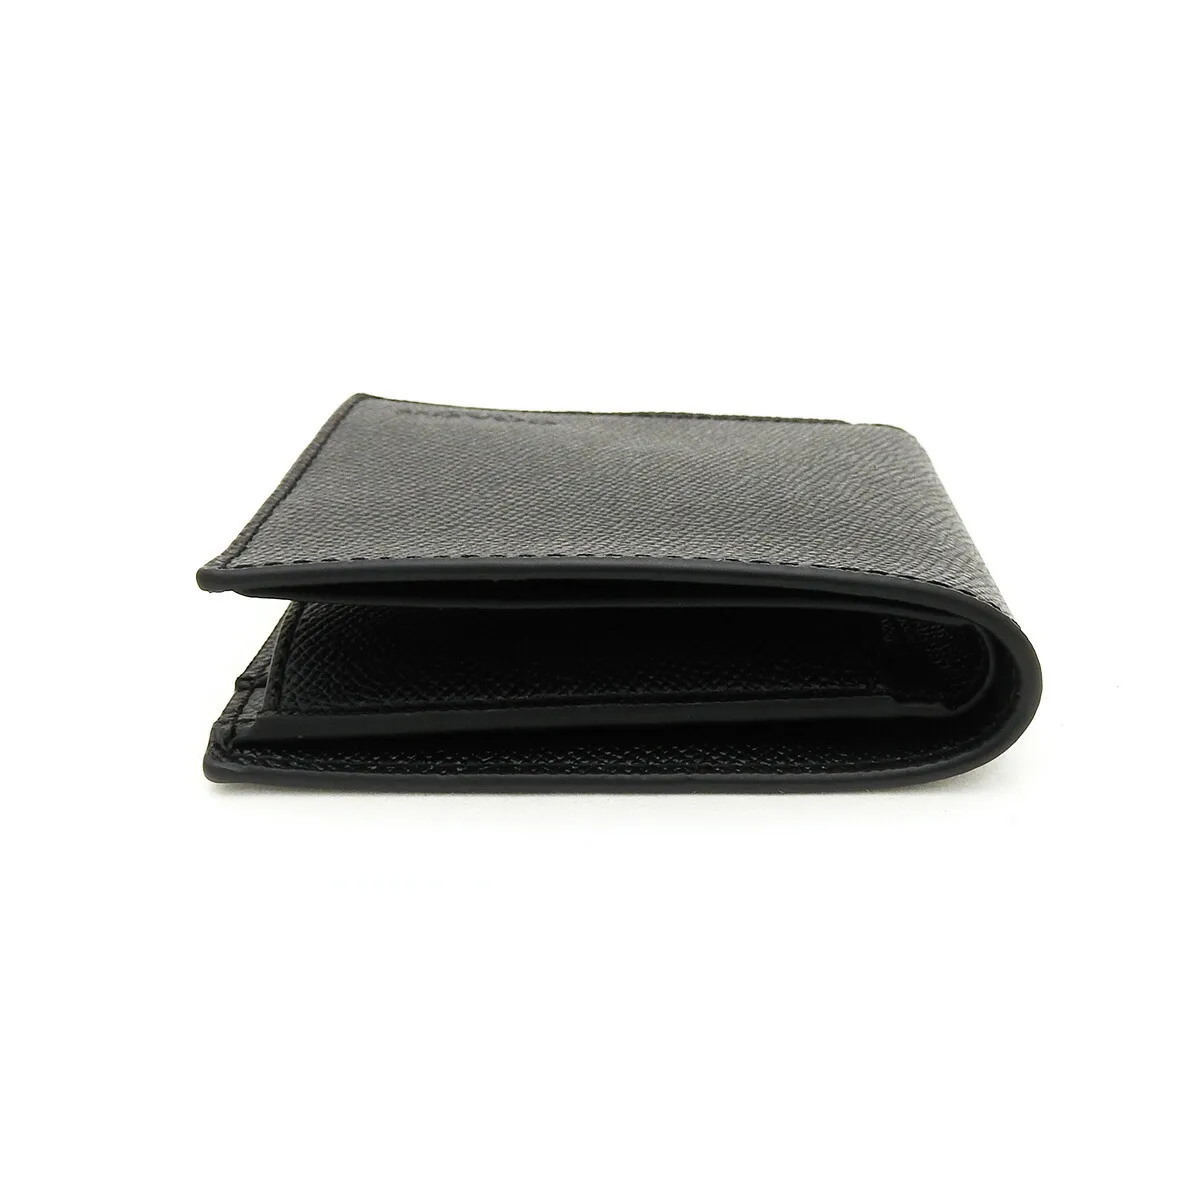 コーチ(COACH) 二つ折り財布 F59111 ブラック